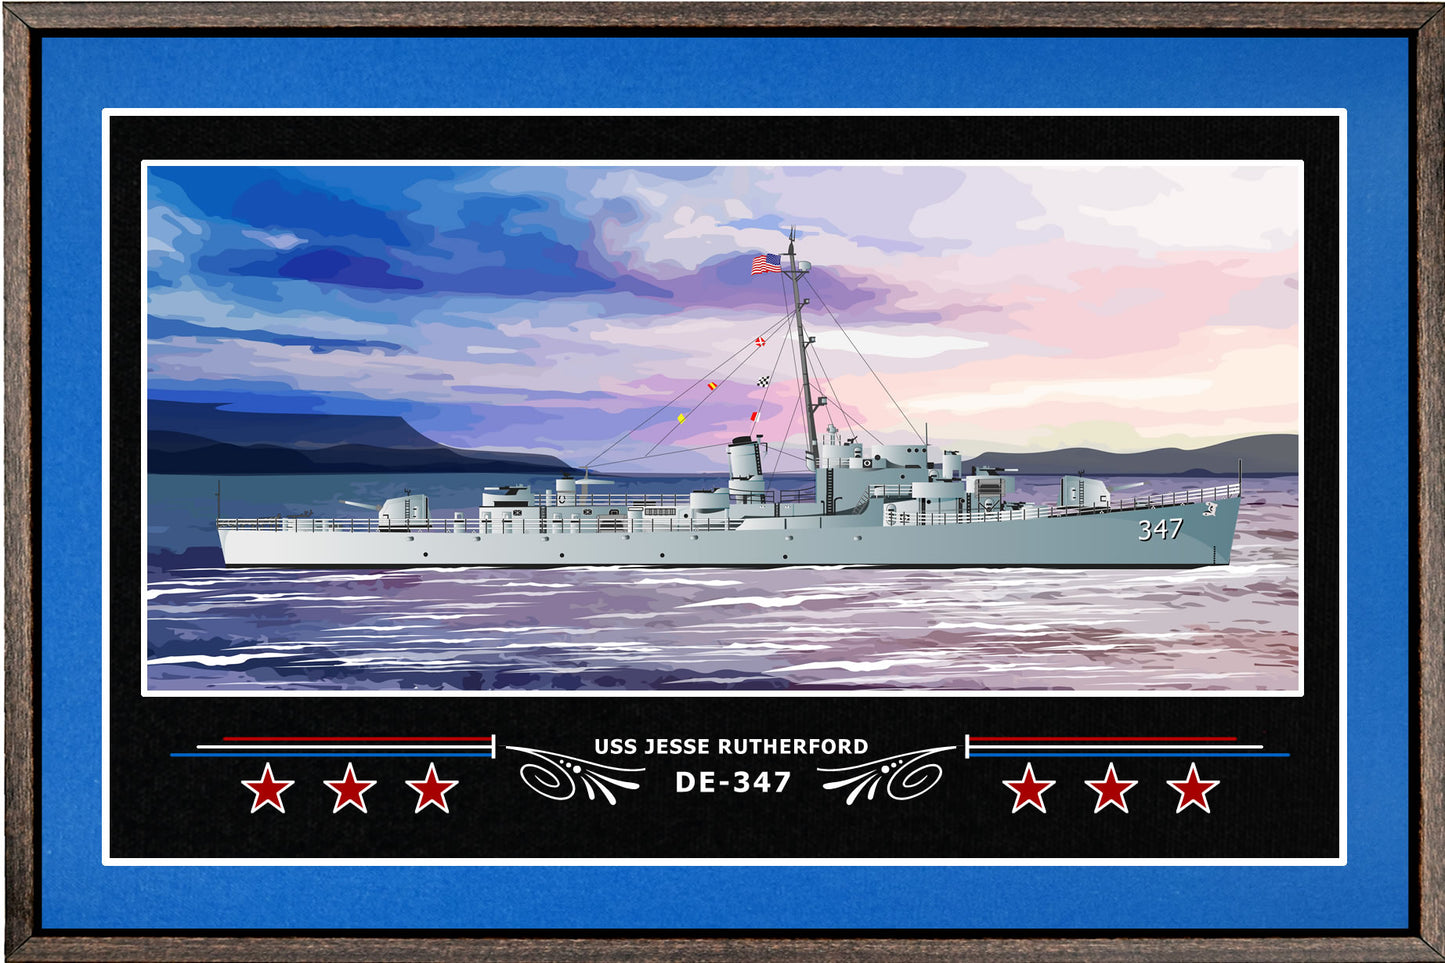 USS JESSE RUTHERFORD DE 347 BOX FRAMED CANVAS ART BLUE